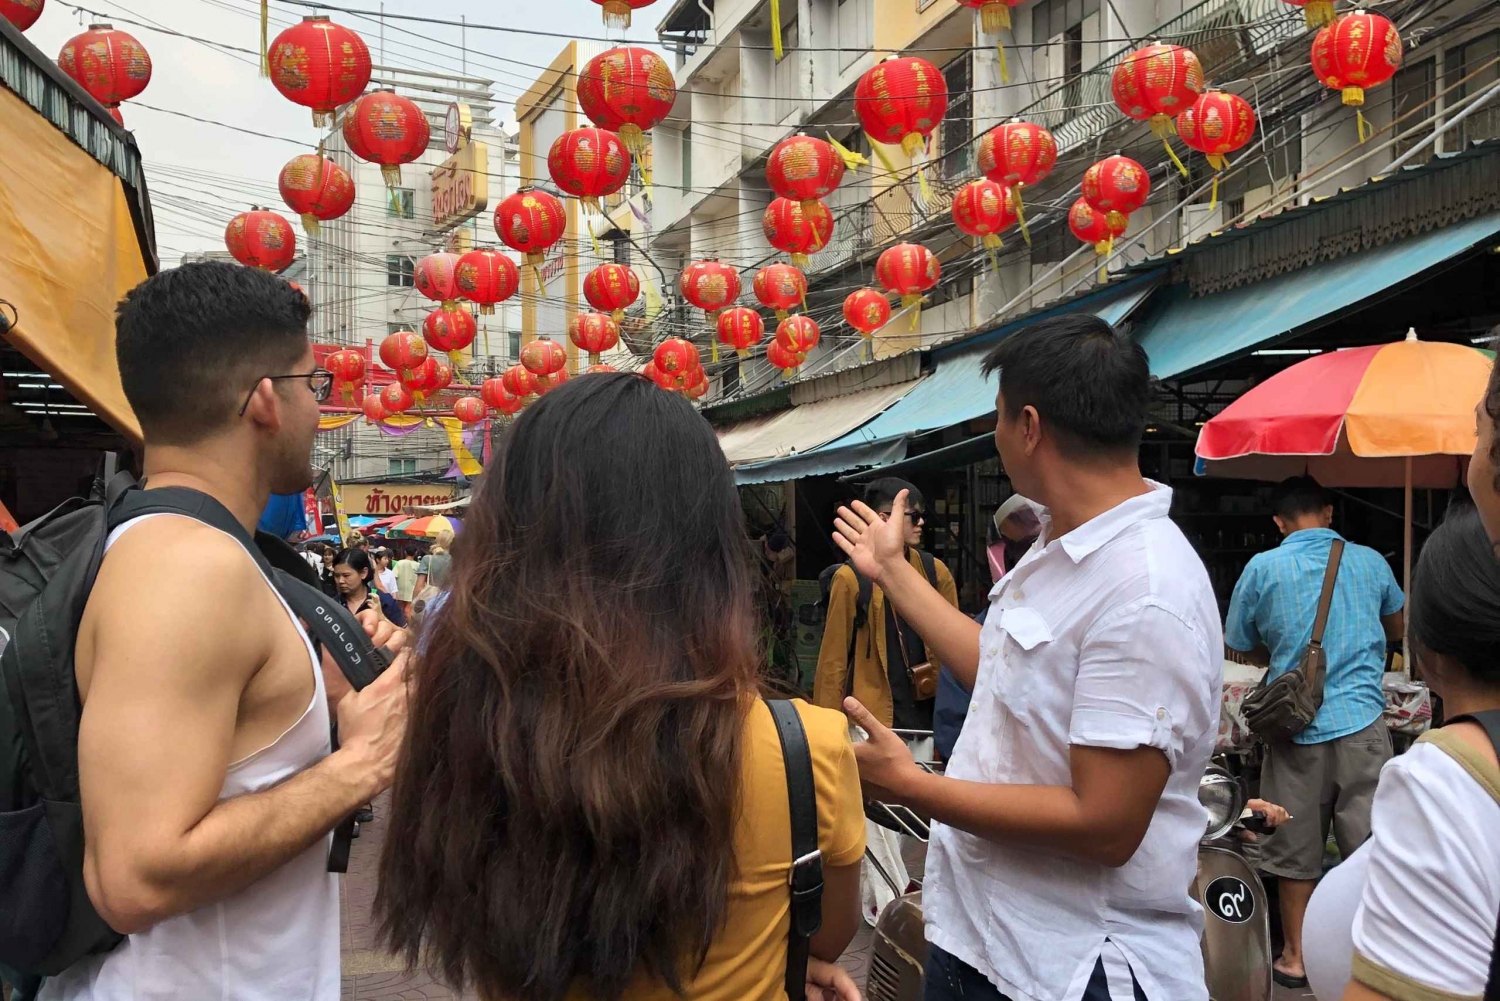 Bangkok: Guidad tur i Chinatown med besök på Wat Chakrawat